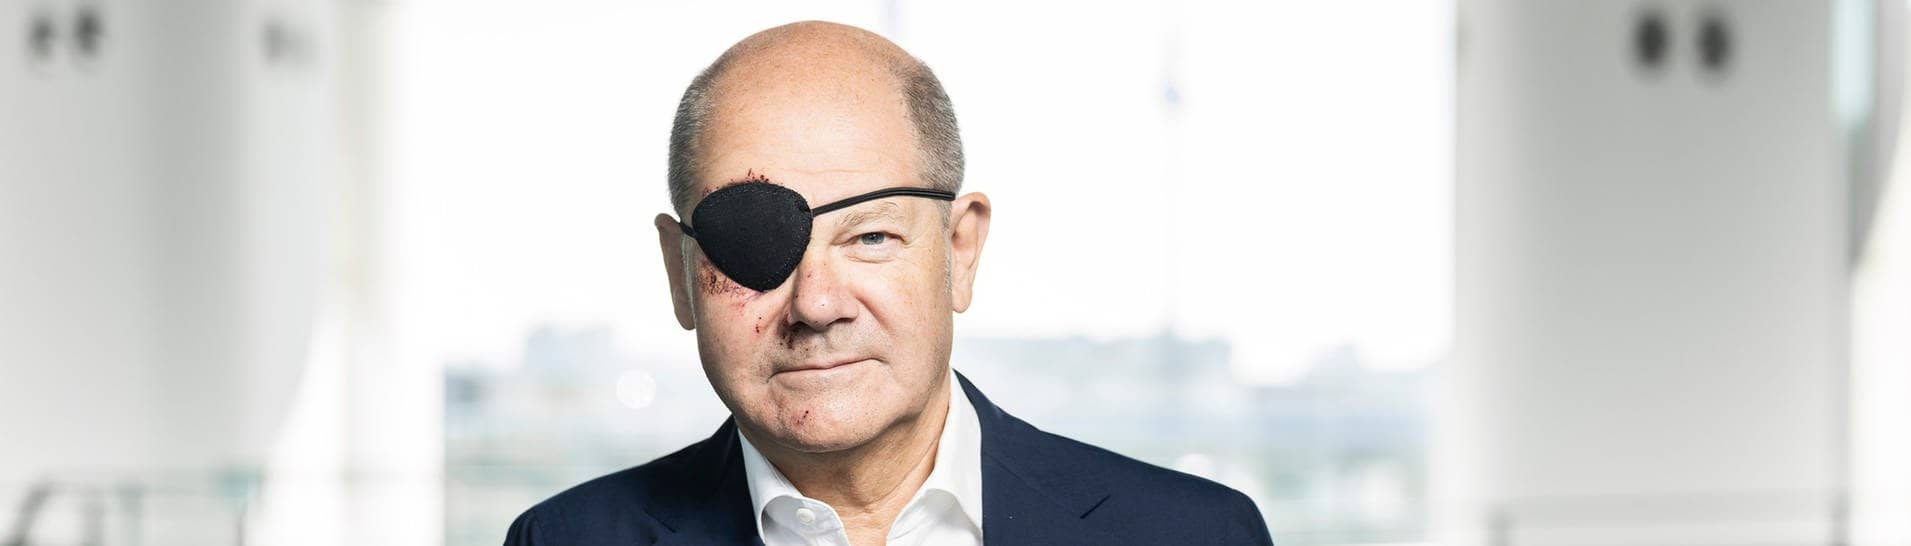 Bundeskanzler Olaf Scholz (SPD) mit Augenklappe, die er aufgrund einer Sportverletzung trägt.